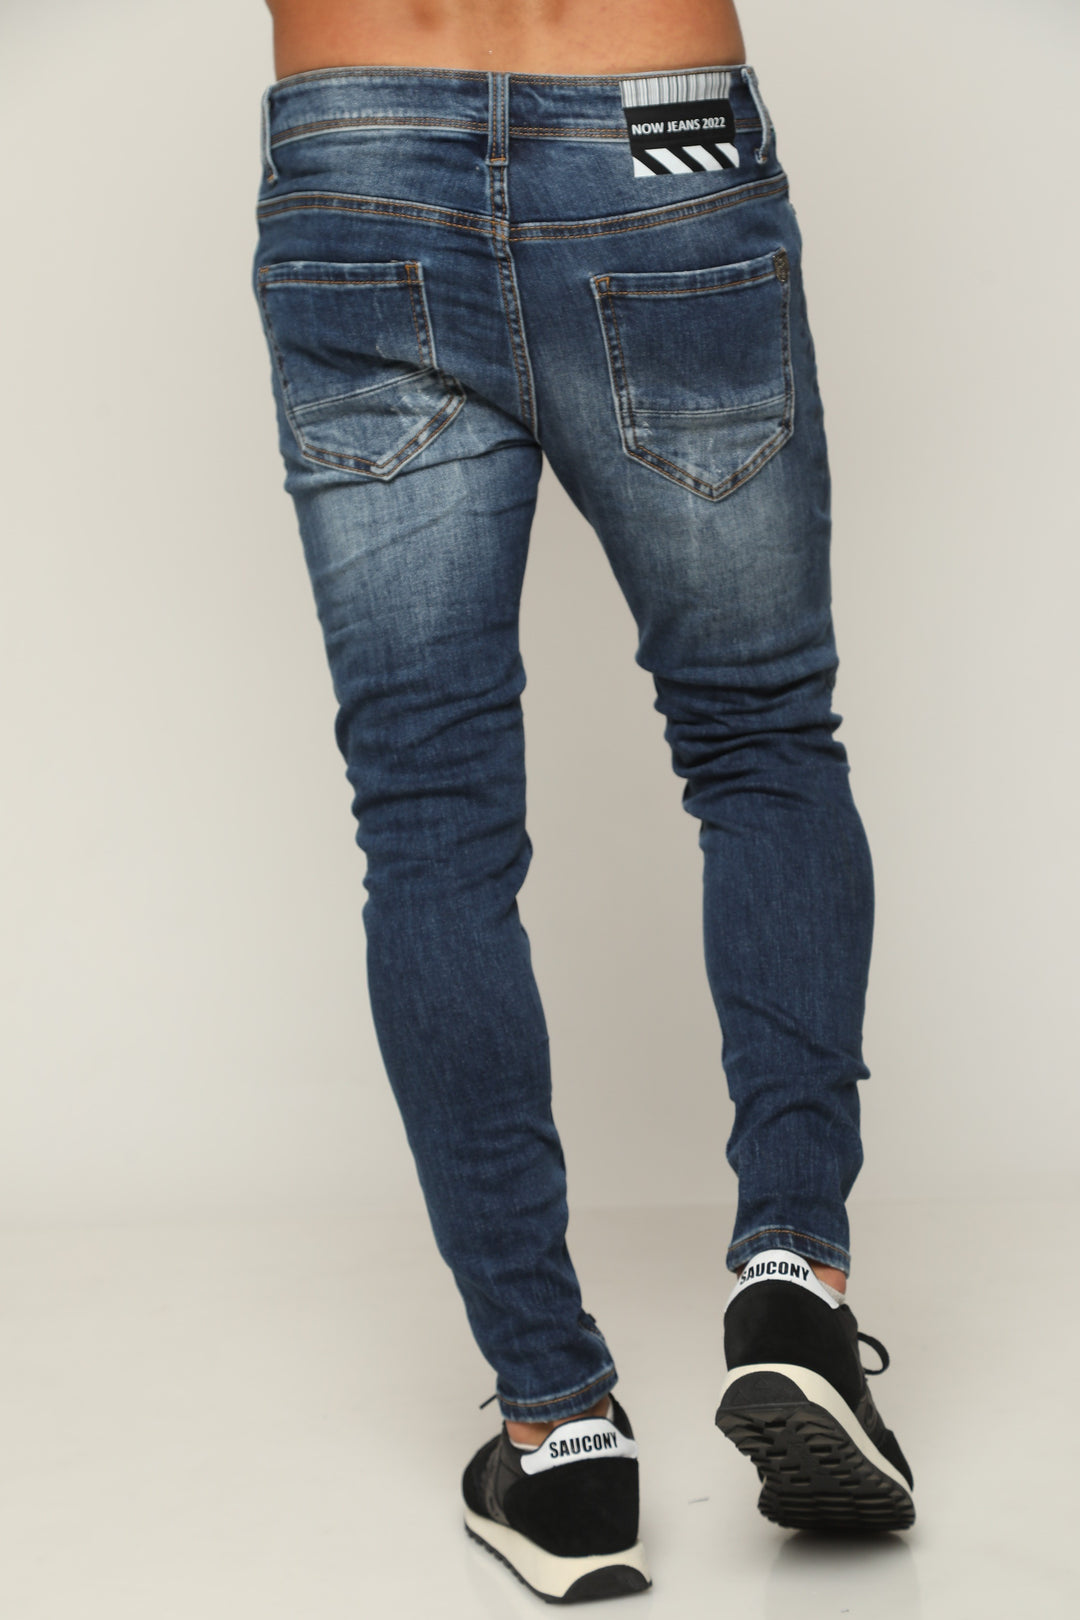 ג'ינס סופר סקיני 827 - canavaro jeans